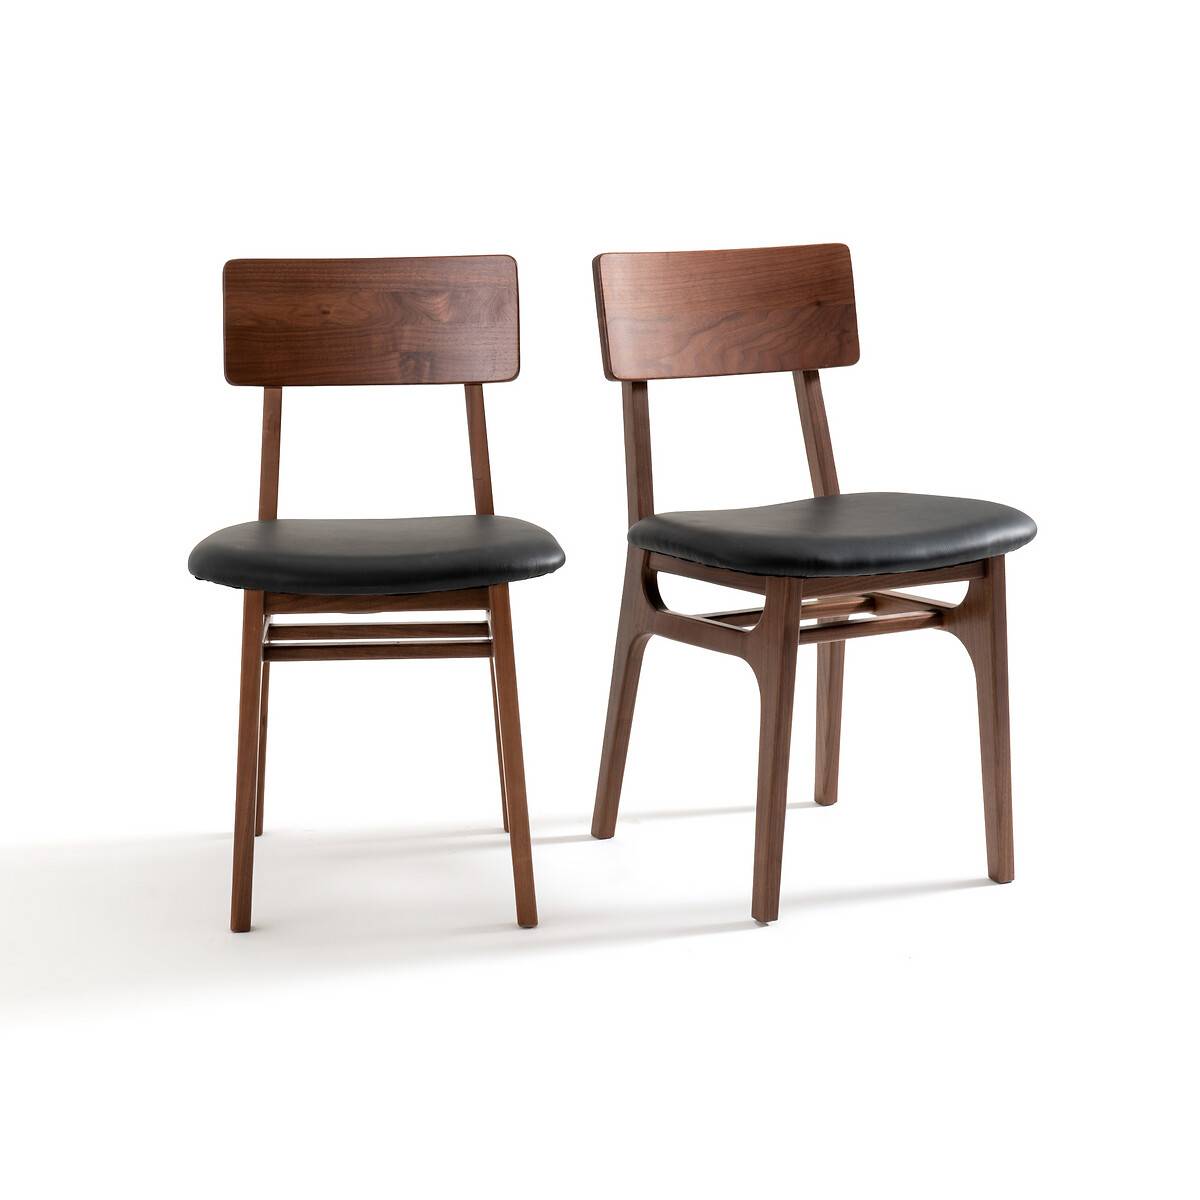 Комплект из 2 стульев из массива орехового дерева и кожи La Redoute Interieurs 83 899 руб. 67 119 руб.